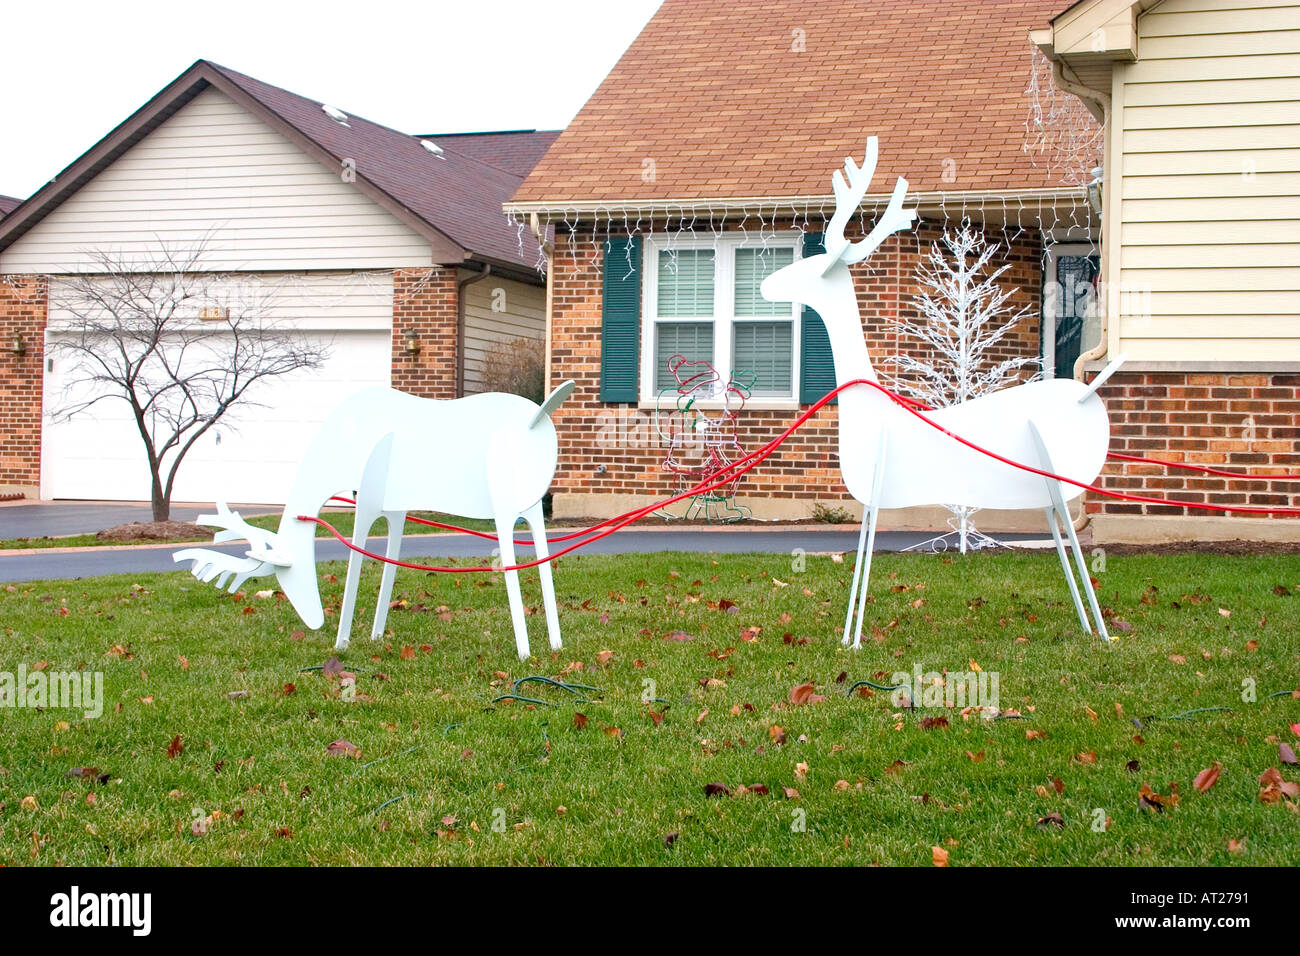 Rangifer tarandus renne de Noël attendant sur la pelouse de Cambridge à Carillon communauté. Plainfield Illinois IL USA Banque D'Images